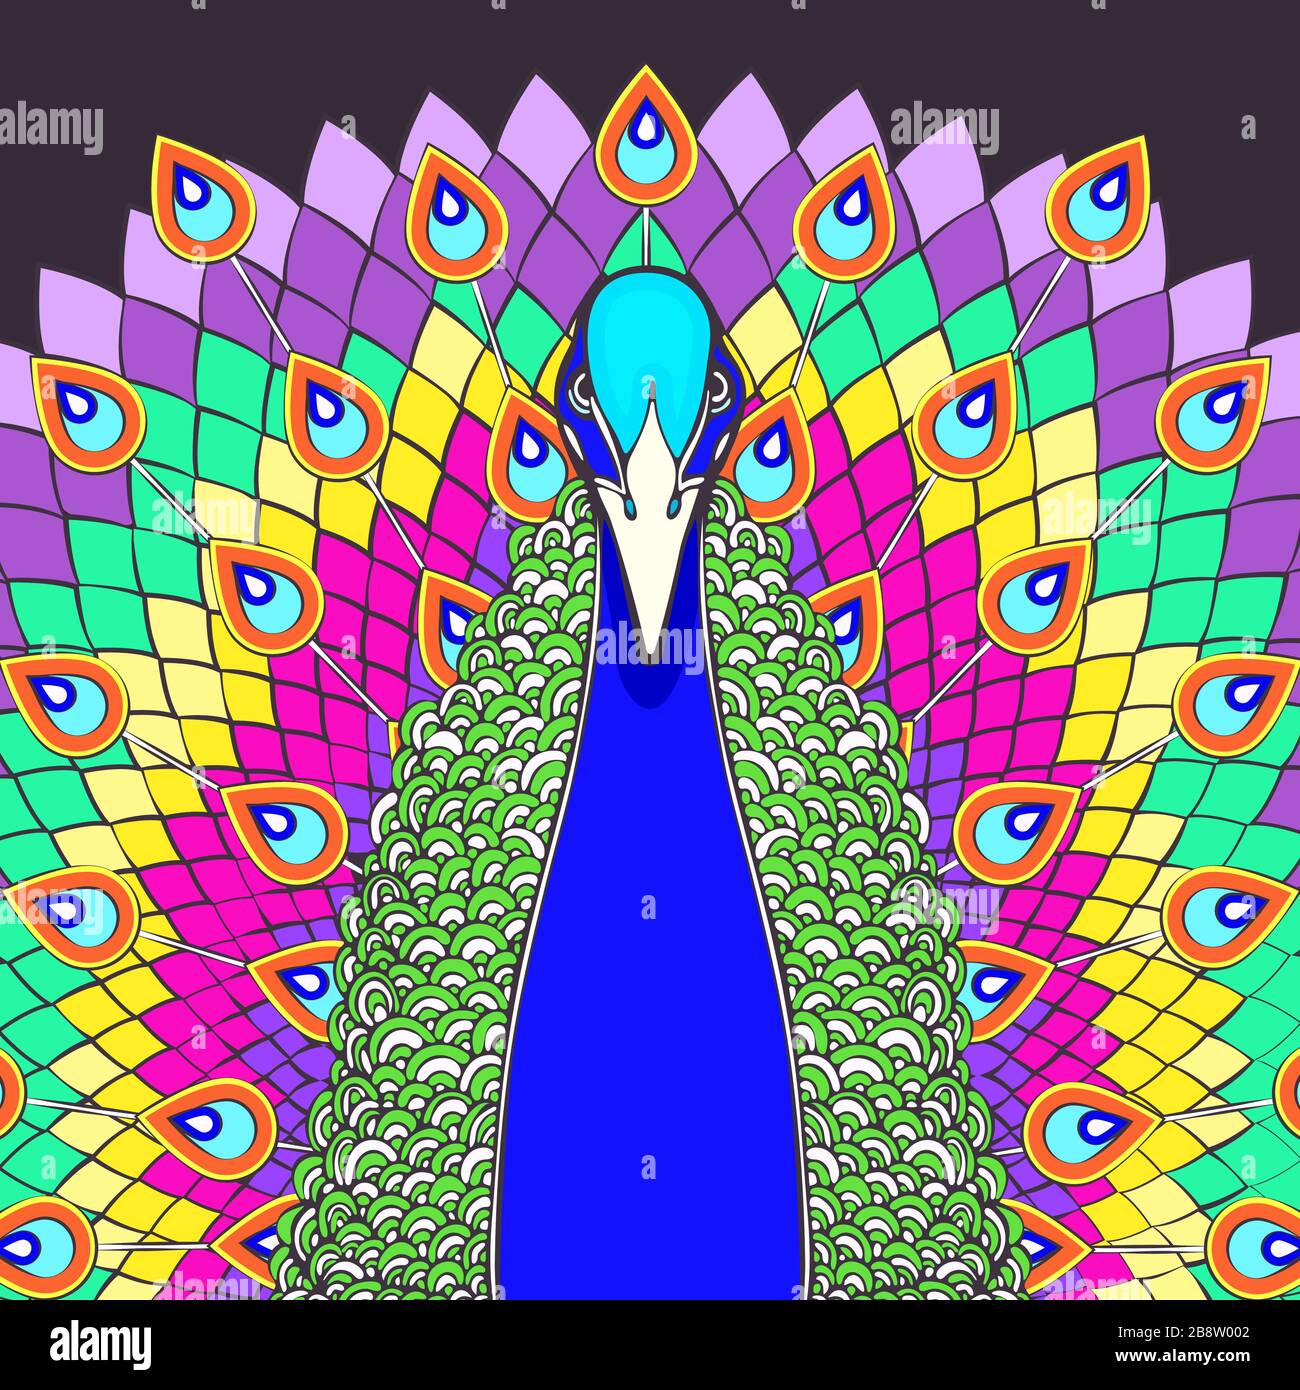 Pfau mit fließendem Schwanz bunte Cartoon-Zeichnung, Vorderansicht. Schöner mehrfarbener Vogel mit großem offenen Regenbogenschwanz mit pfauenhellen Federn, iso Stock Vektor